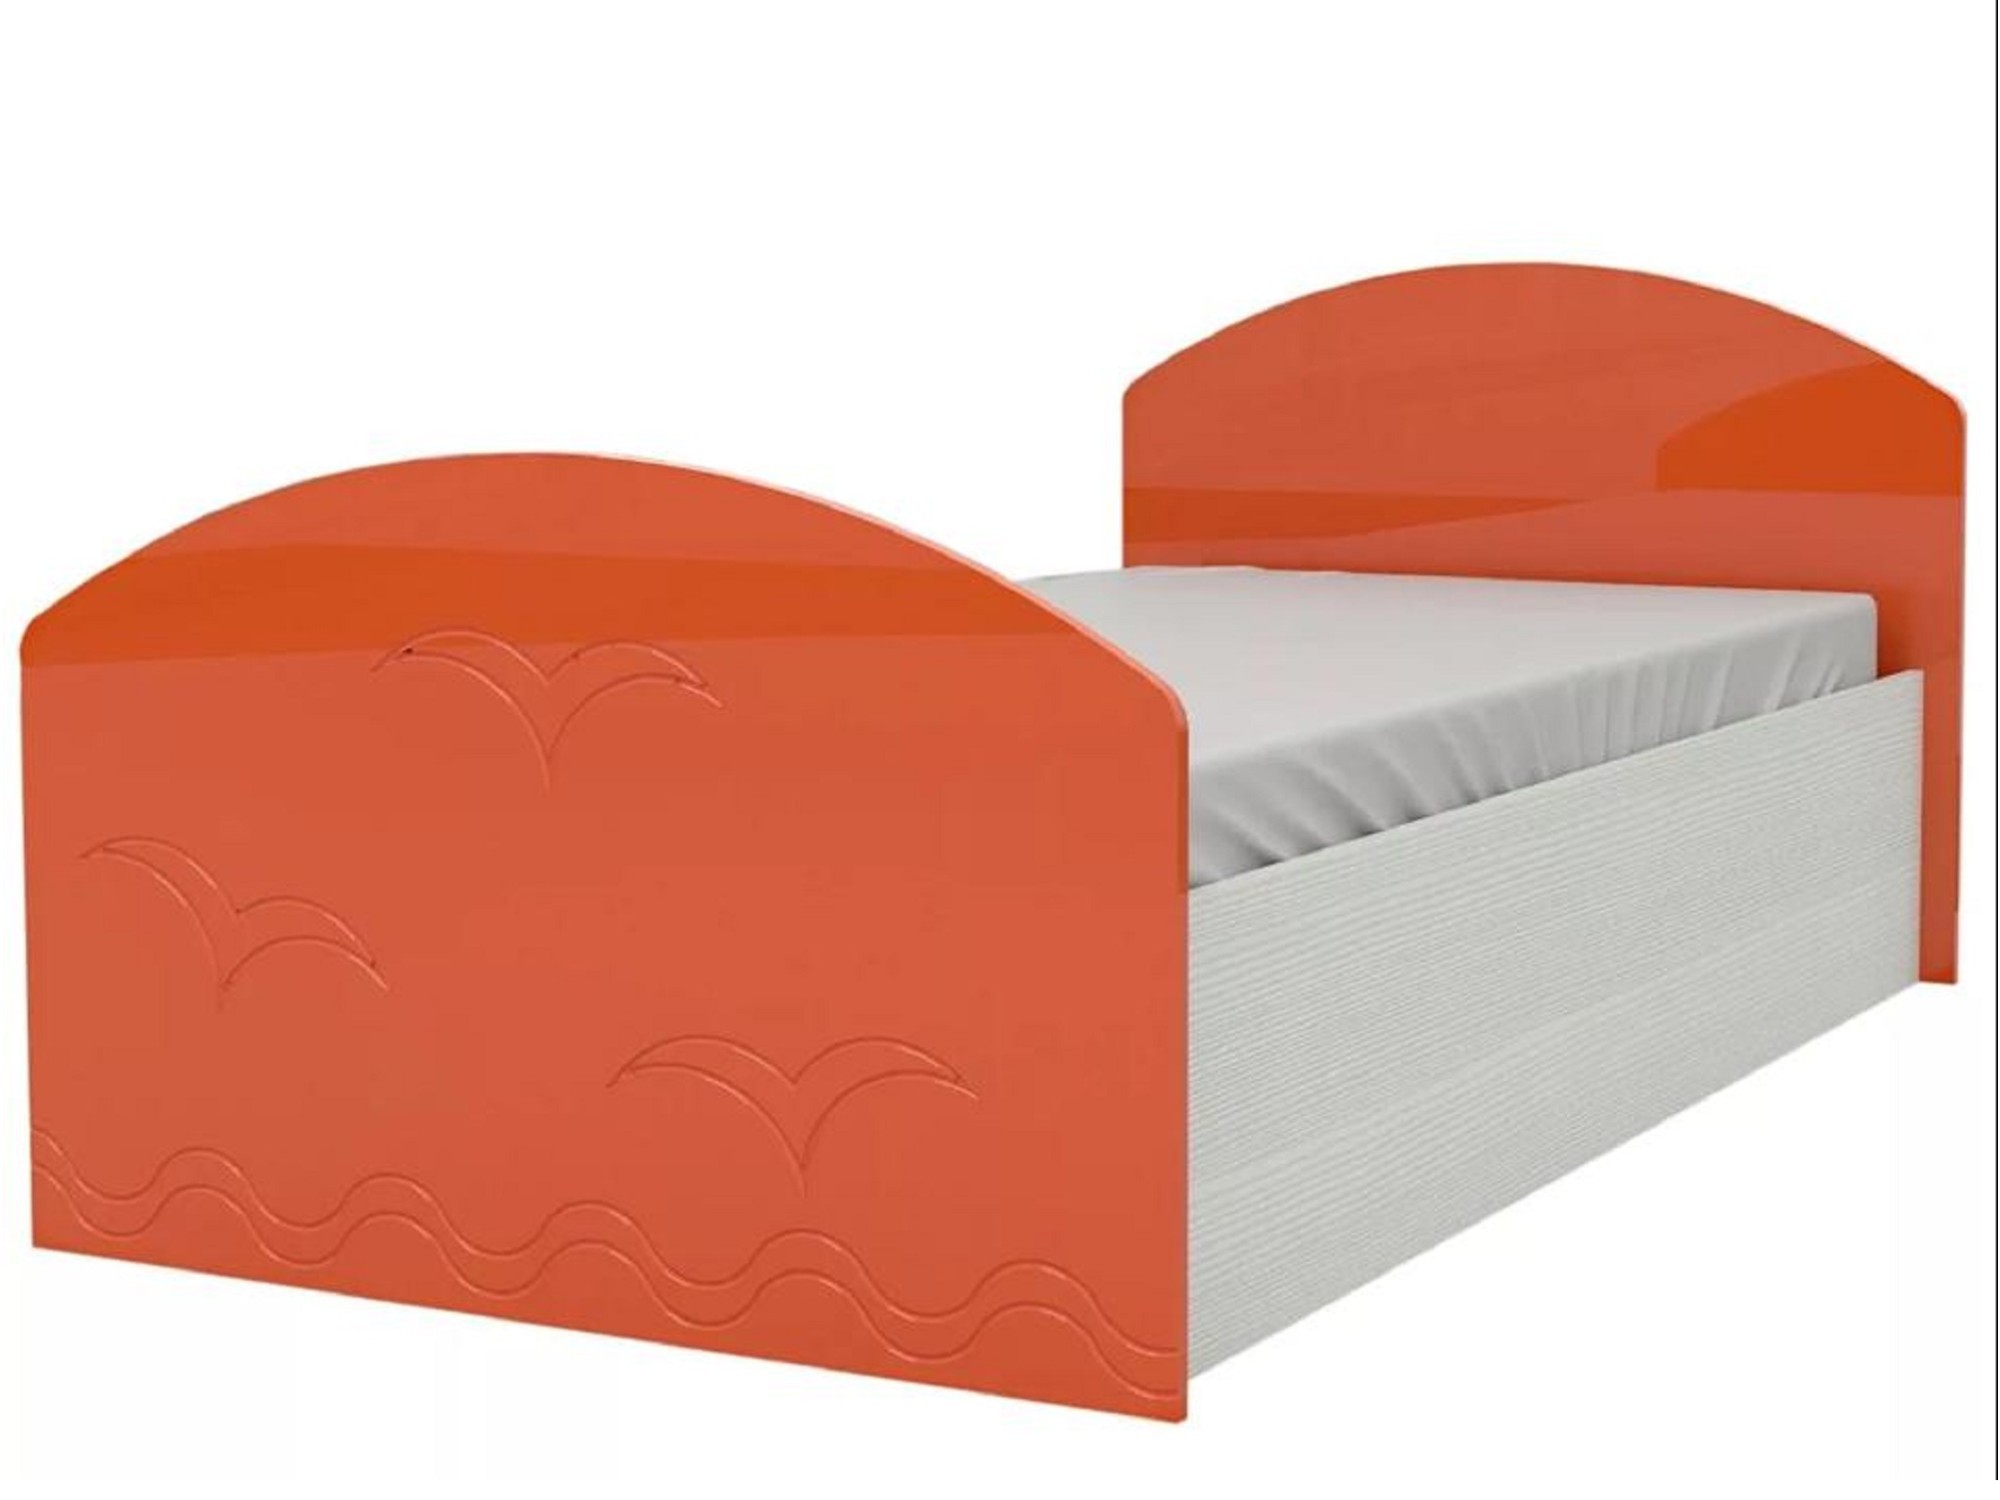 Юниор-2 Детская кровать 80, металлик (Оранжевый металлик, Дуб белёный) Дуб белёный, МДФ, ЛДСП юниор 2 детская кровать 80 металлик салат металл дуб белёный дуб белёный мдф лдсп